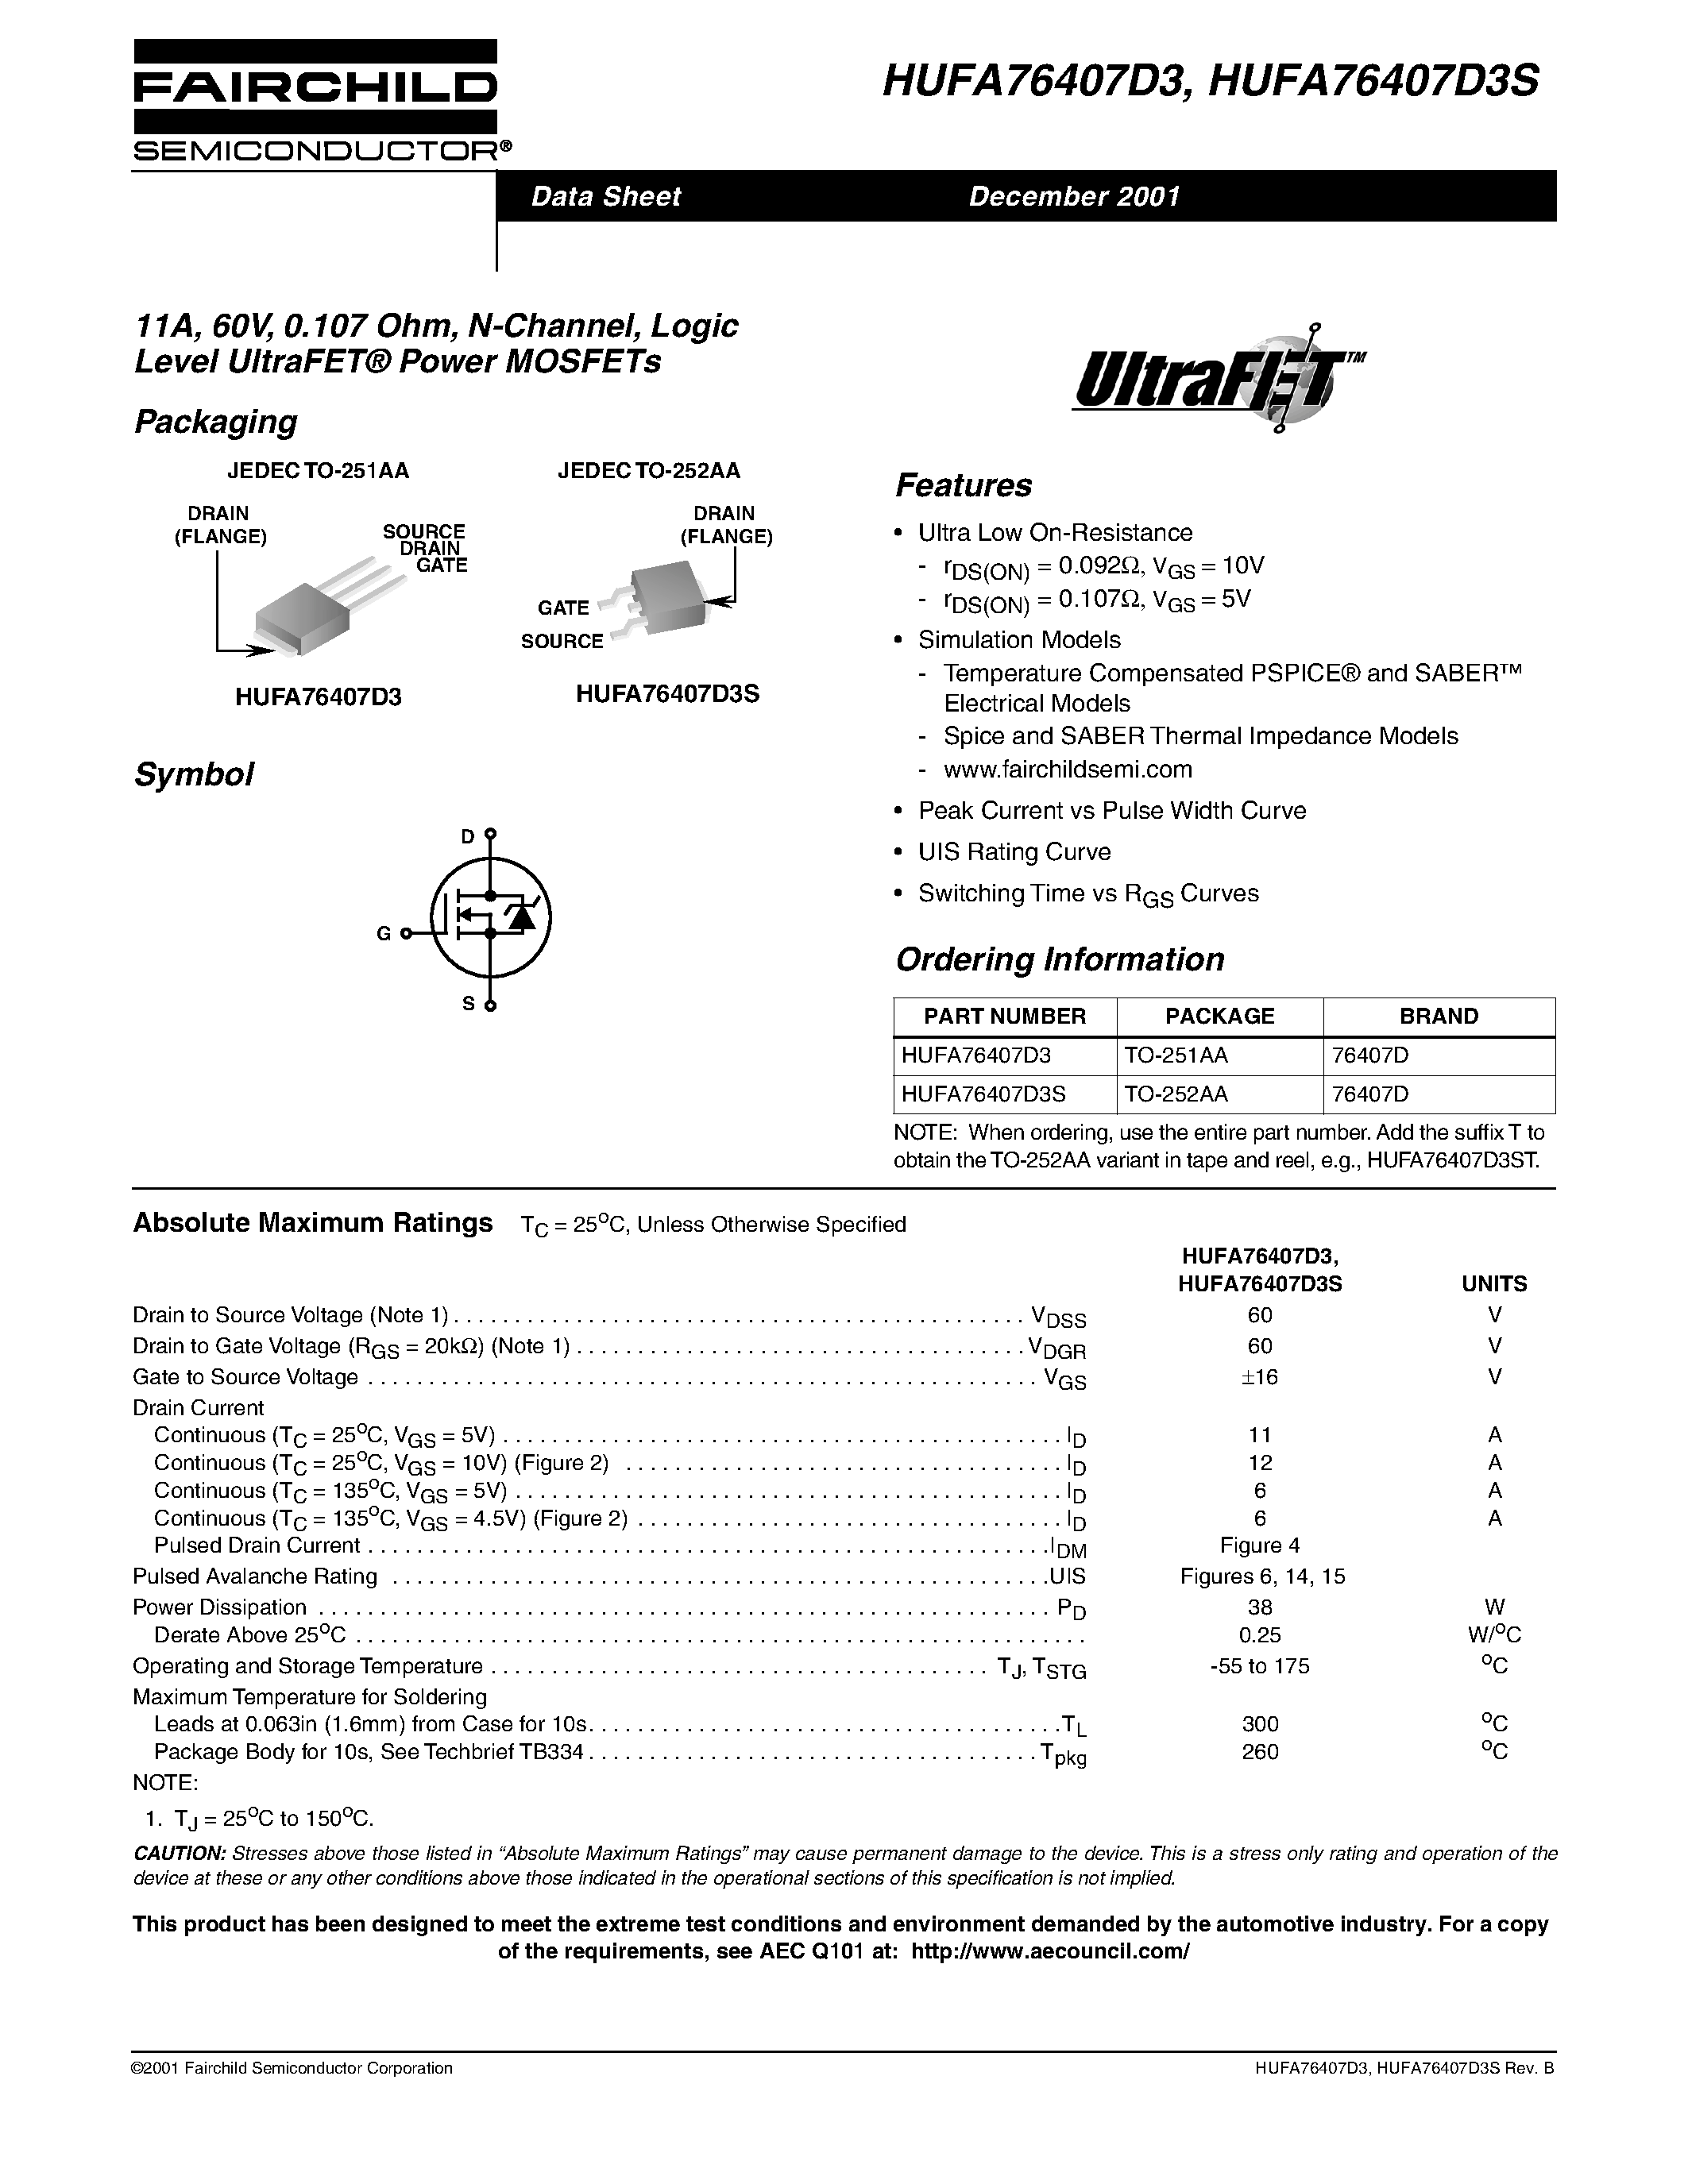 Даташит HUFA76407D3 - 11A/ 60V/ 0.107 Ohm/ N-Channel/ Logic Level UltraFET Power MOSFETs страница 1